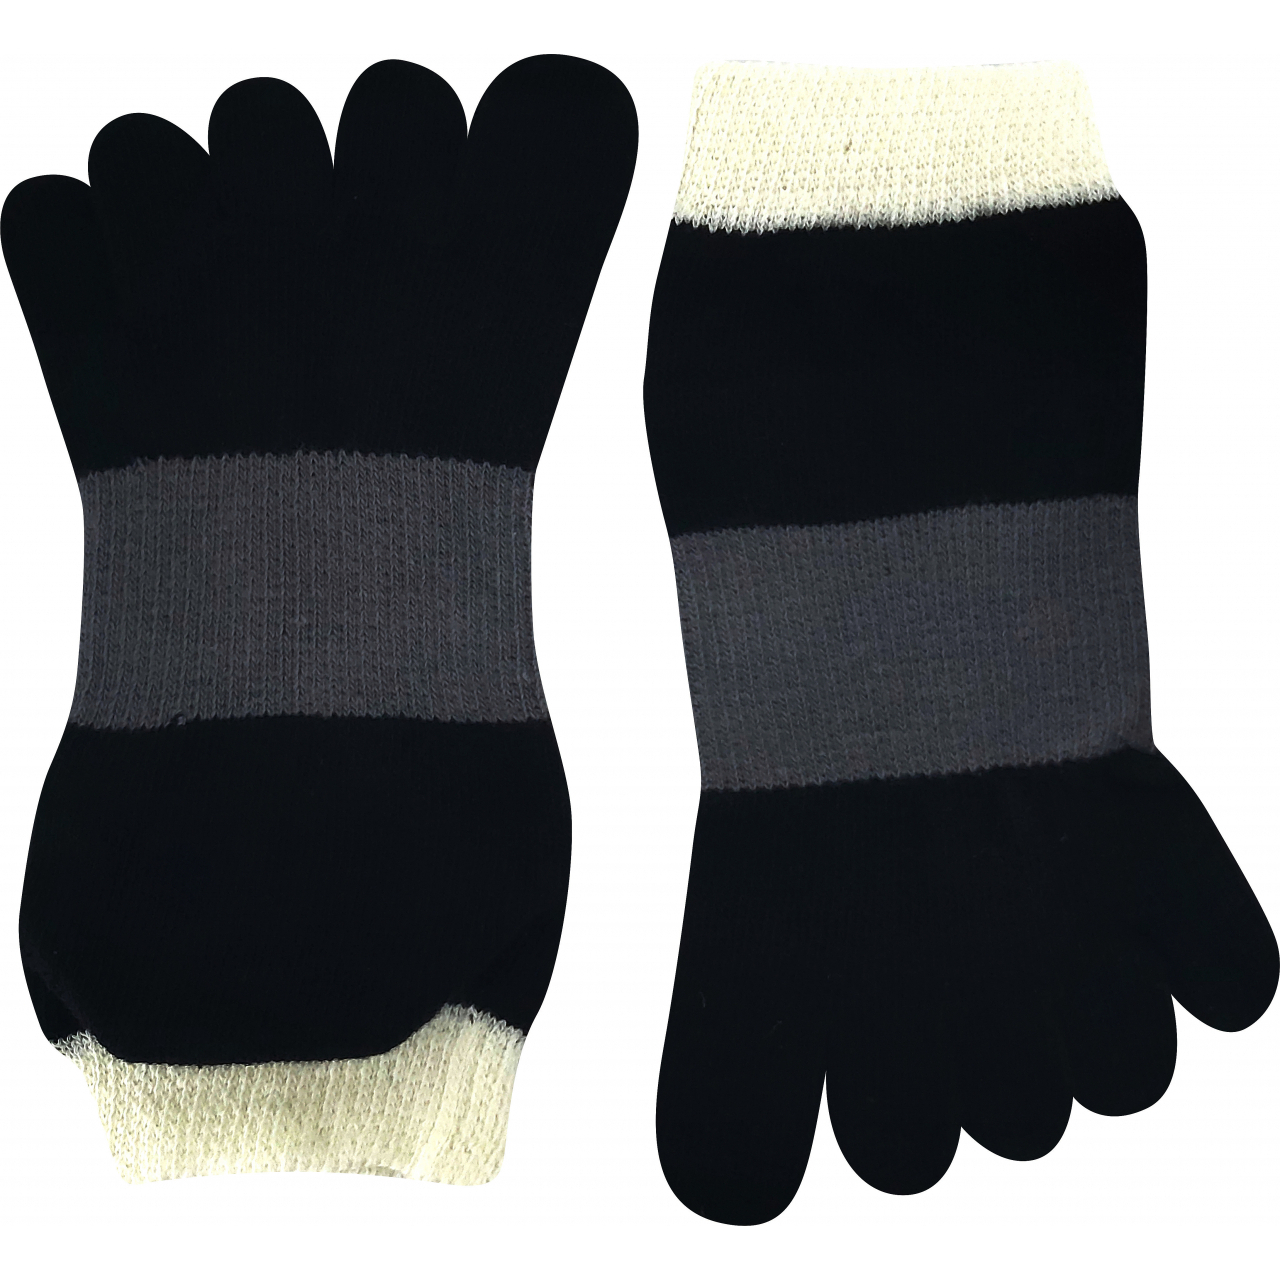 Ponožky unisex Boma Prstan-a 11 - černé-šedé, 42-46